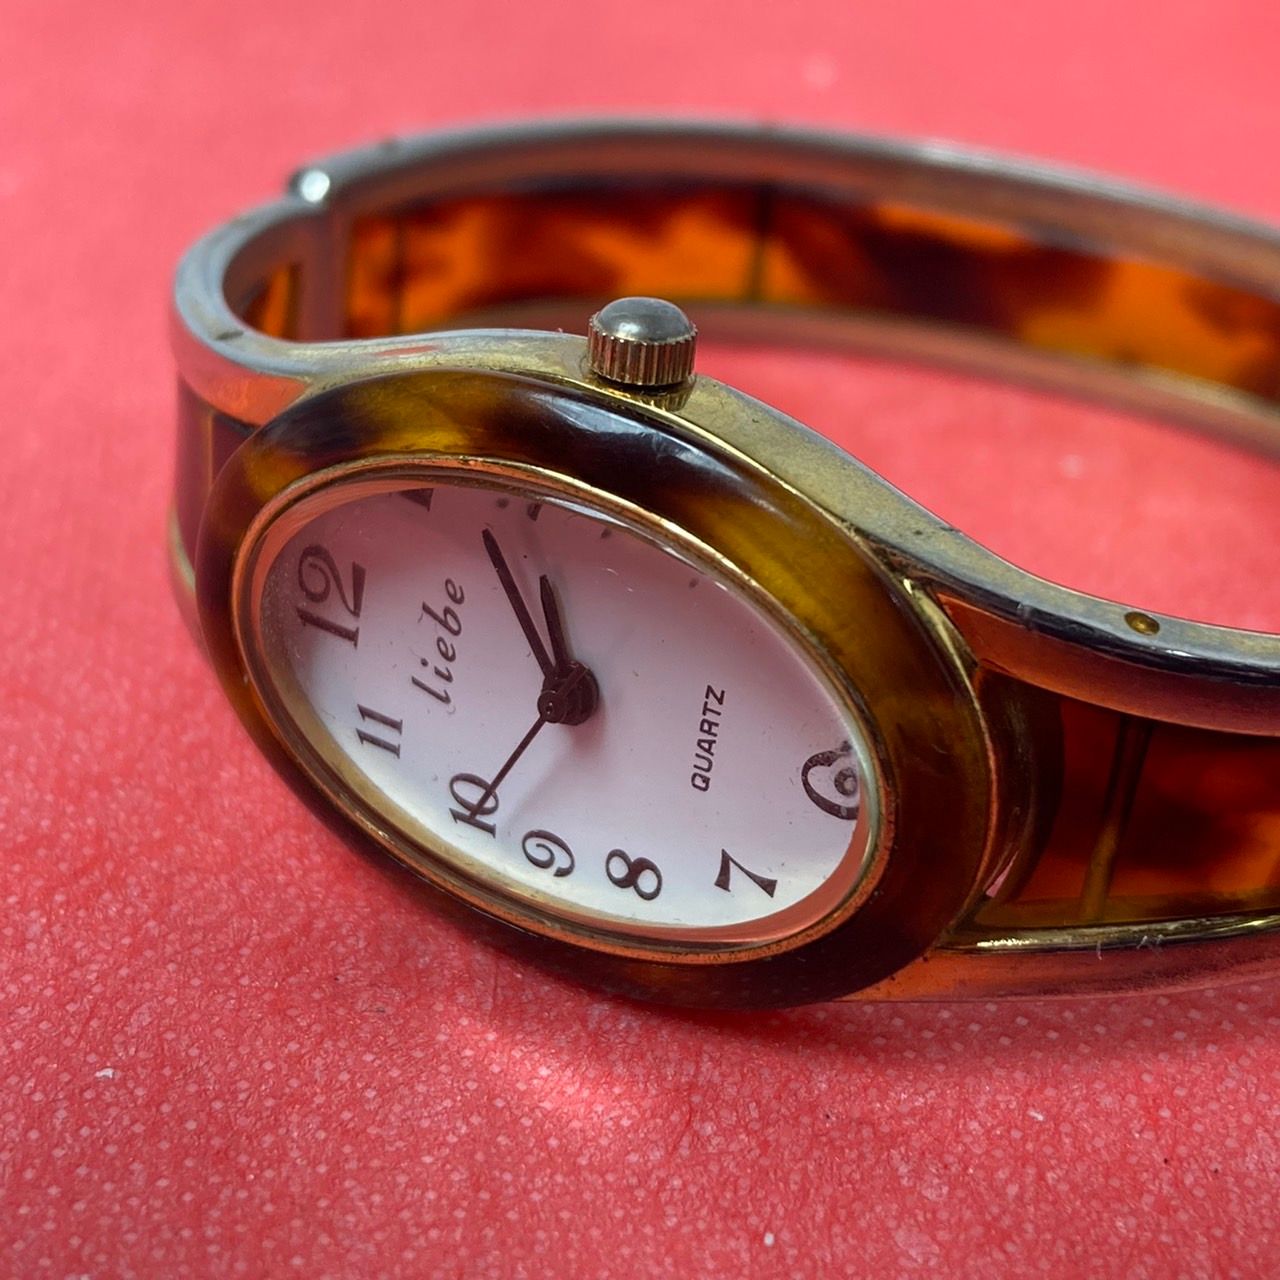 【liebe】 QUARTZ レディース腕時計 アナログ 3針 バッテリー交換済 動作確認済【中古】